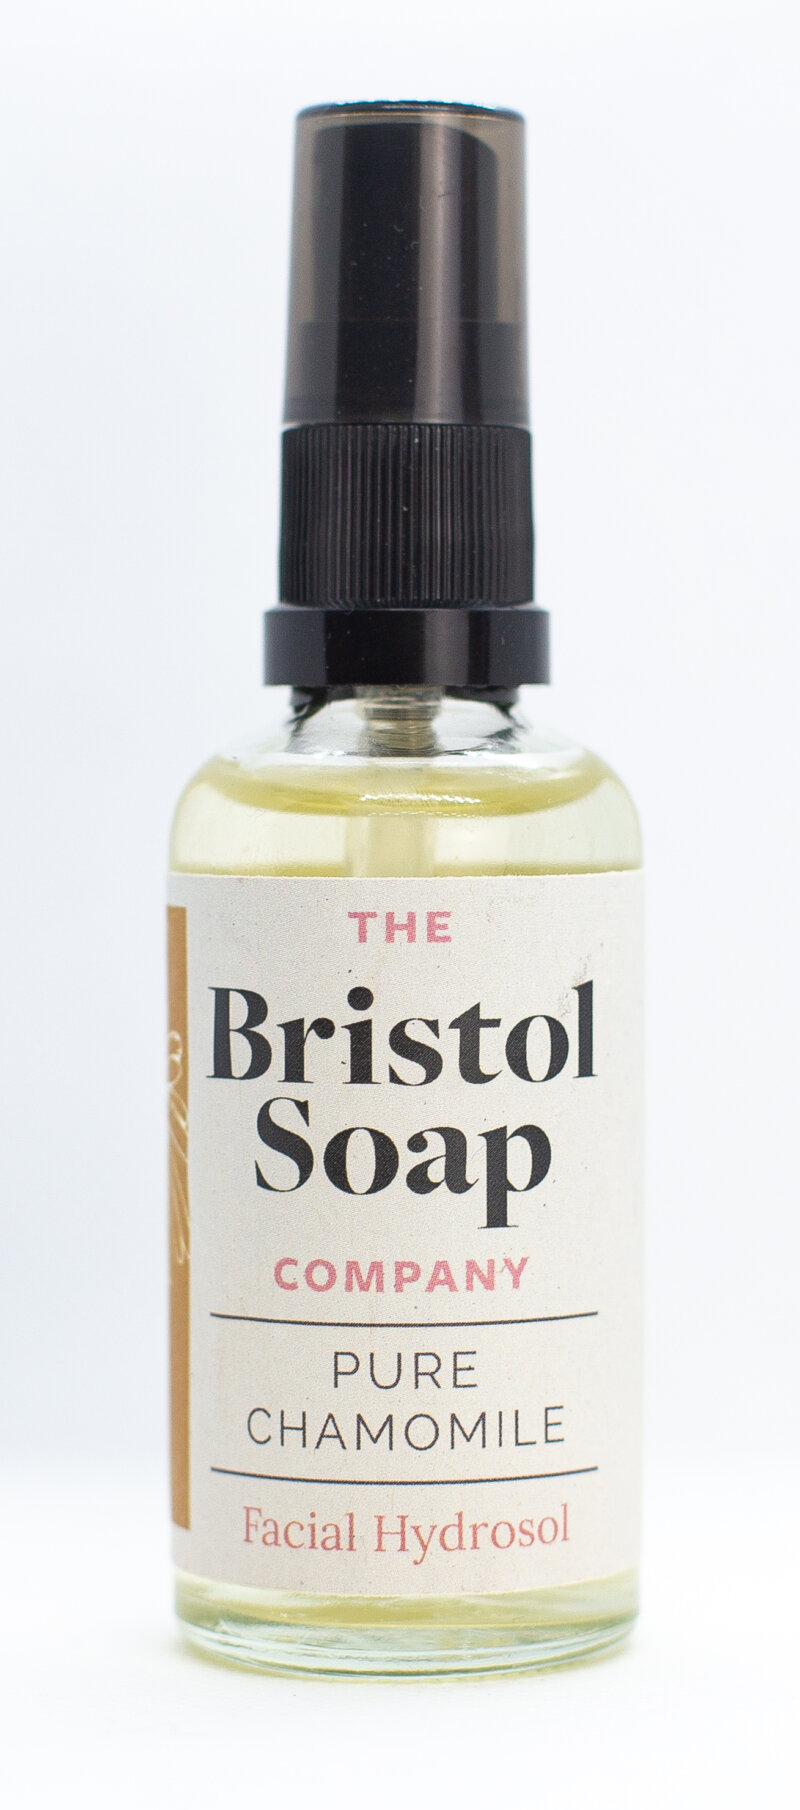 Pure Chamomile Facial Hydrosol by The Bristol Soap Company